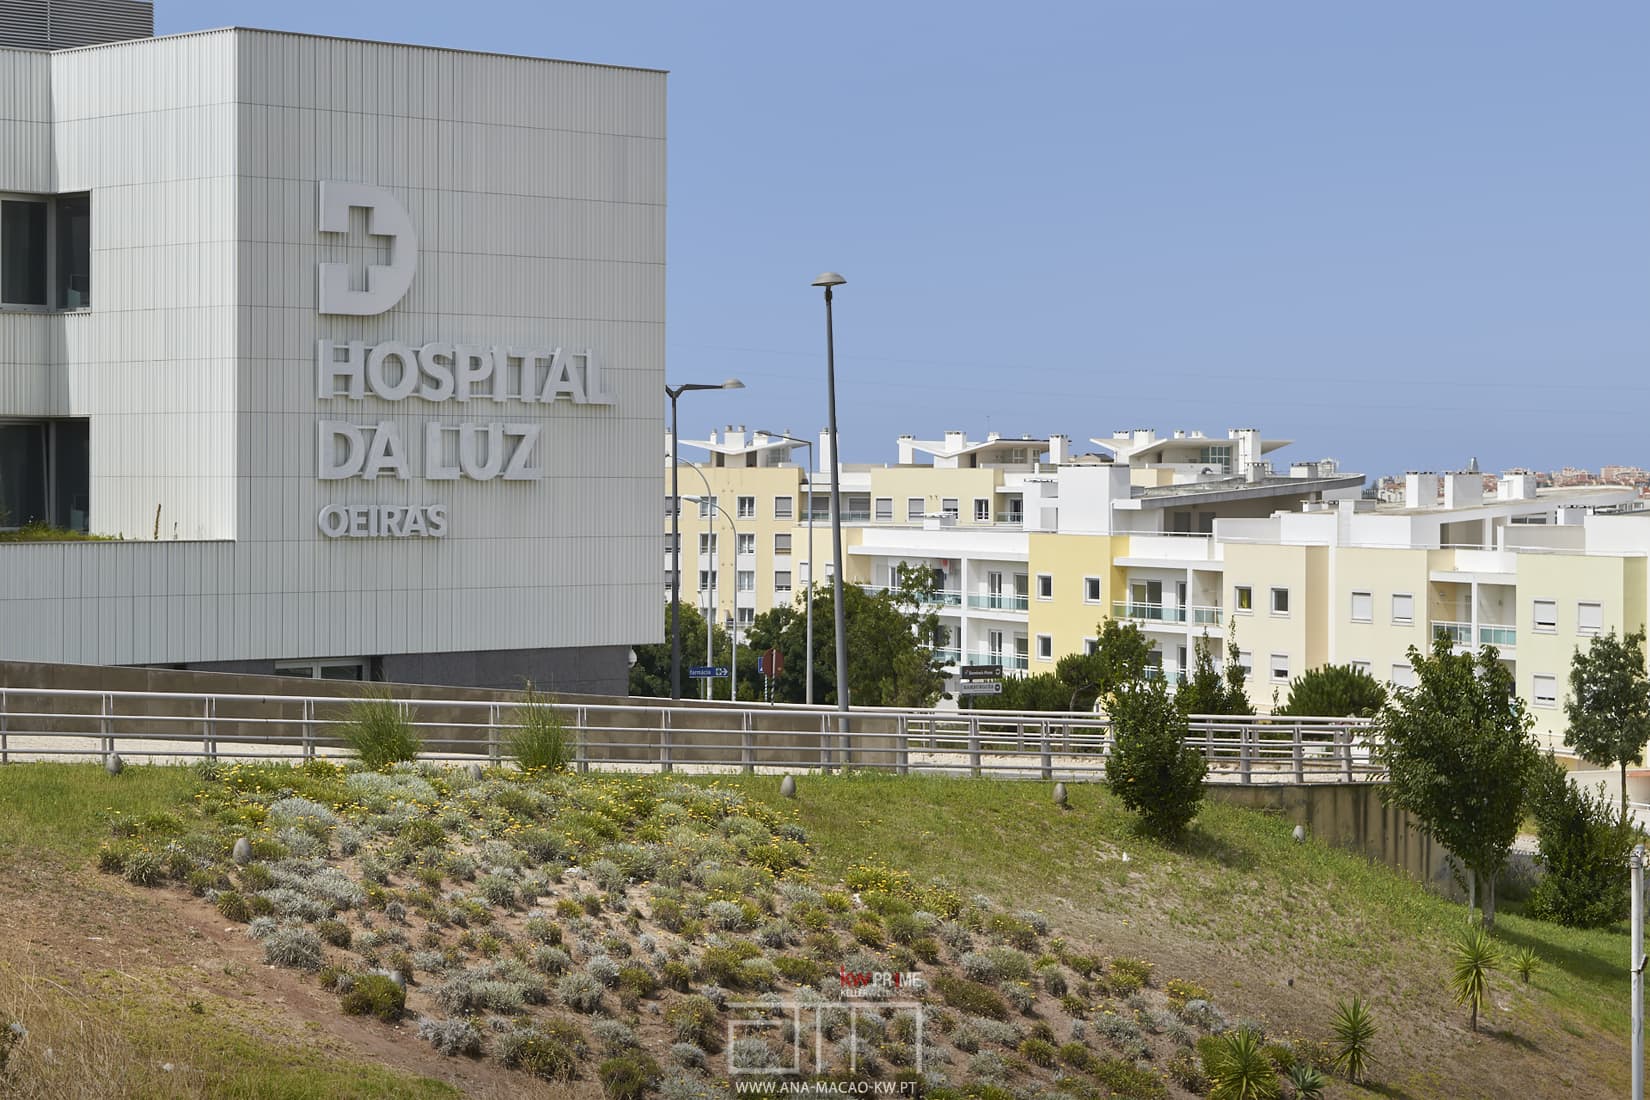 Hospital da Luz ao lado do Fórum Oeiras